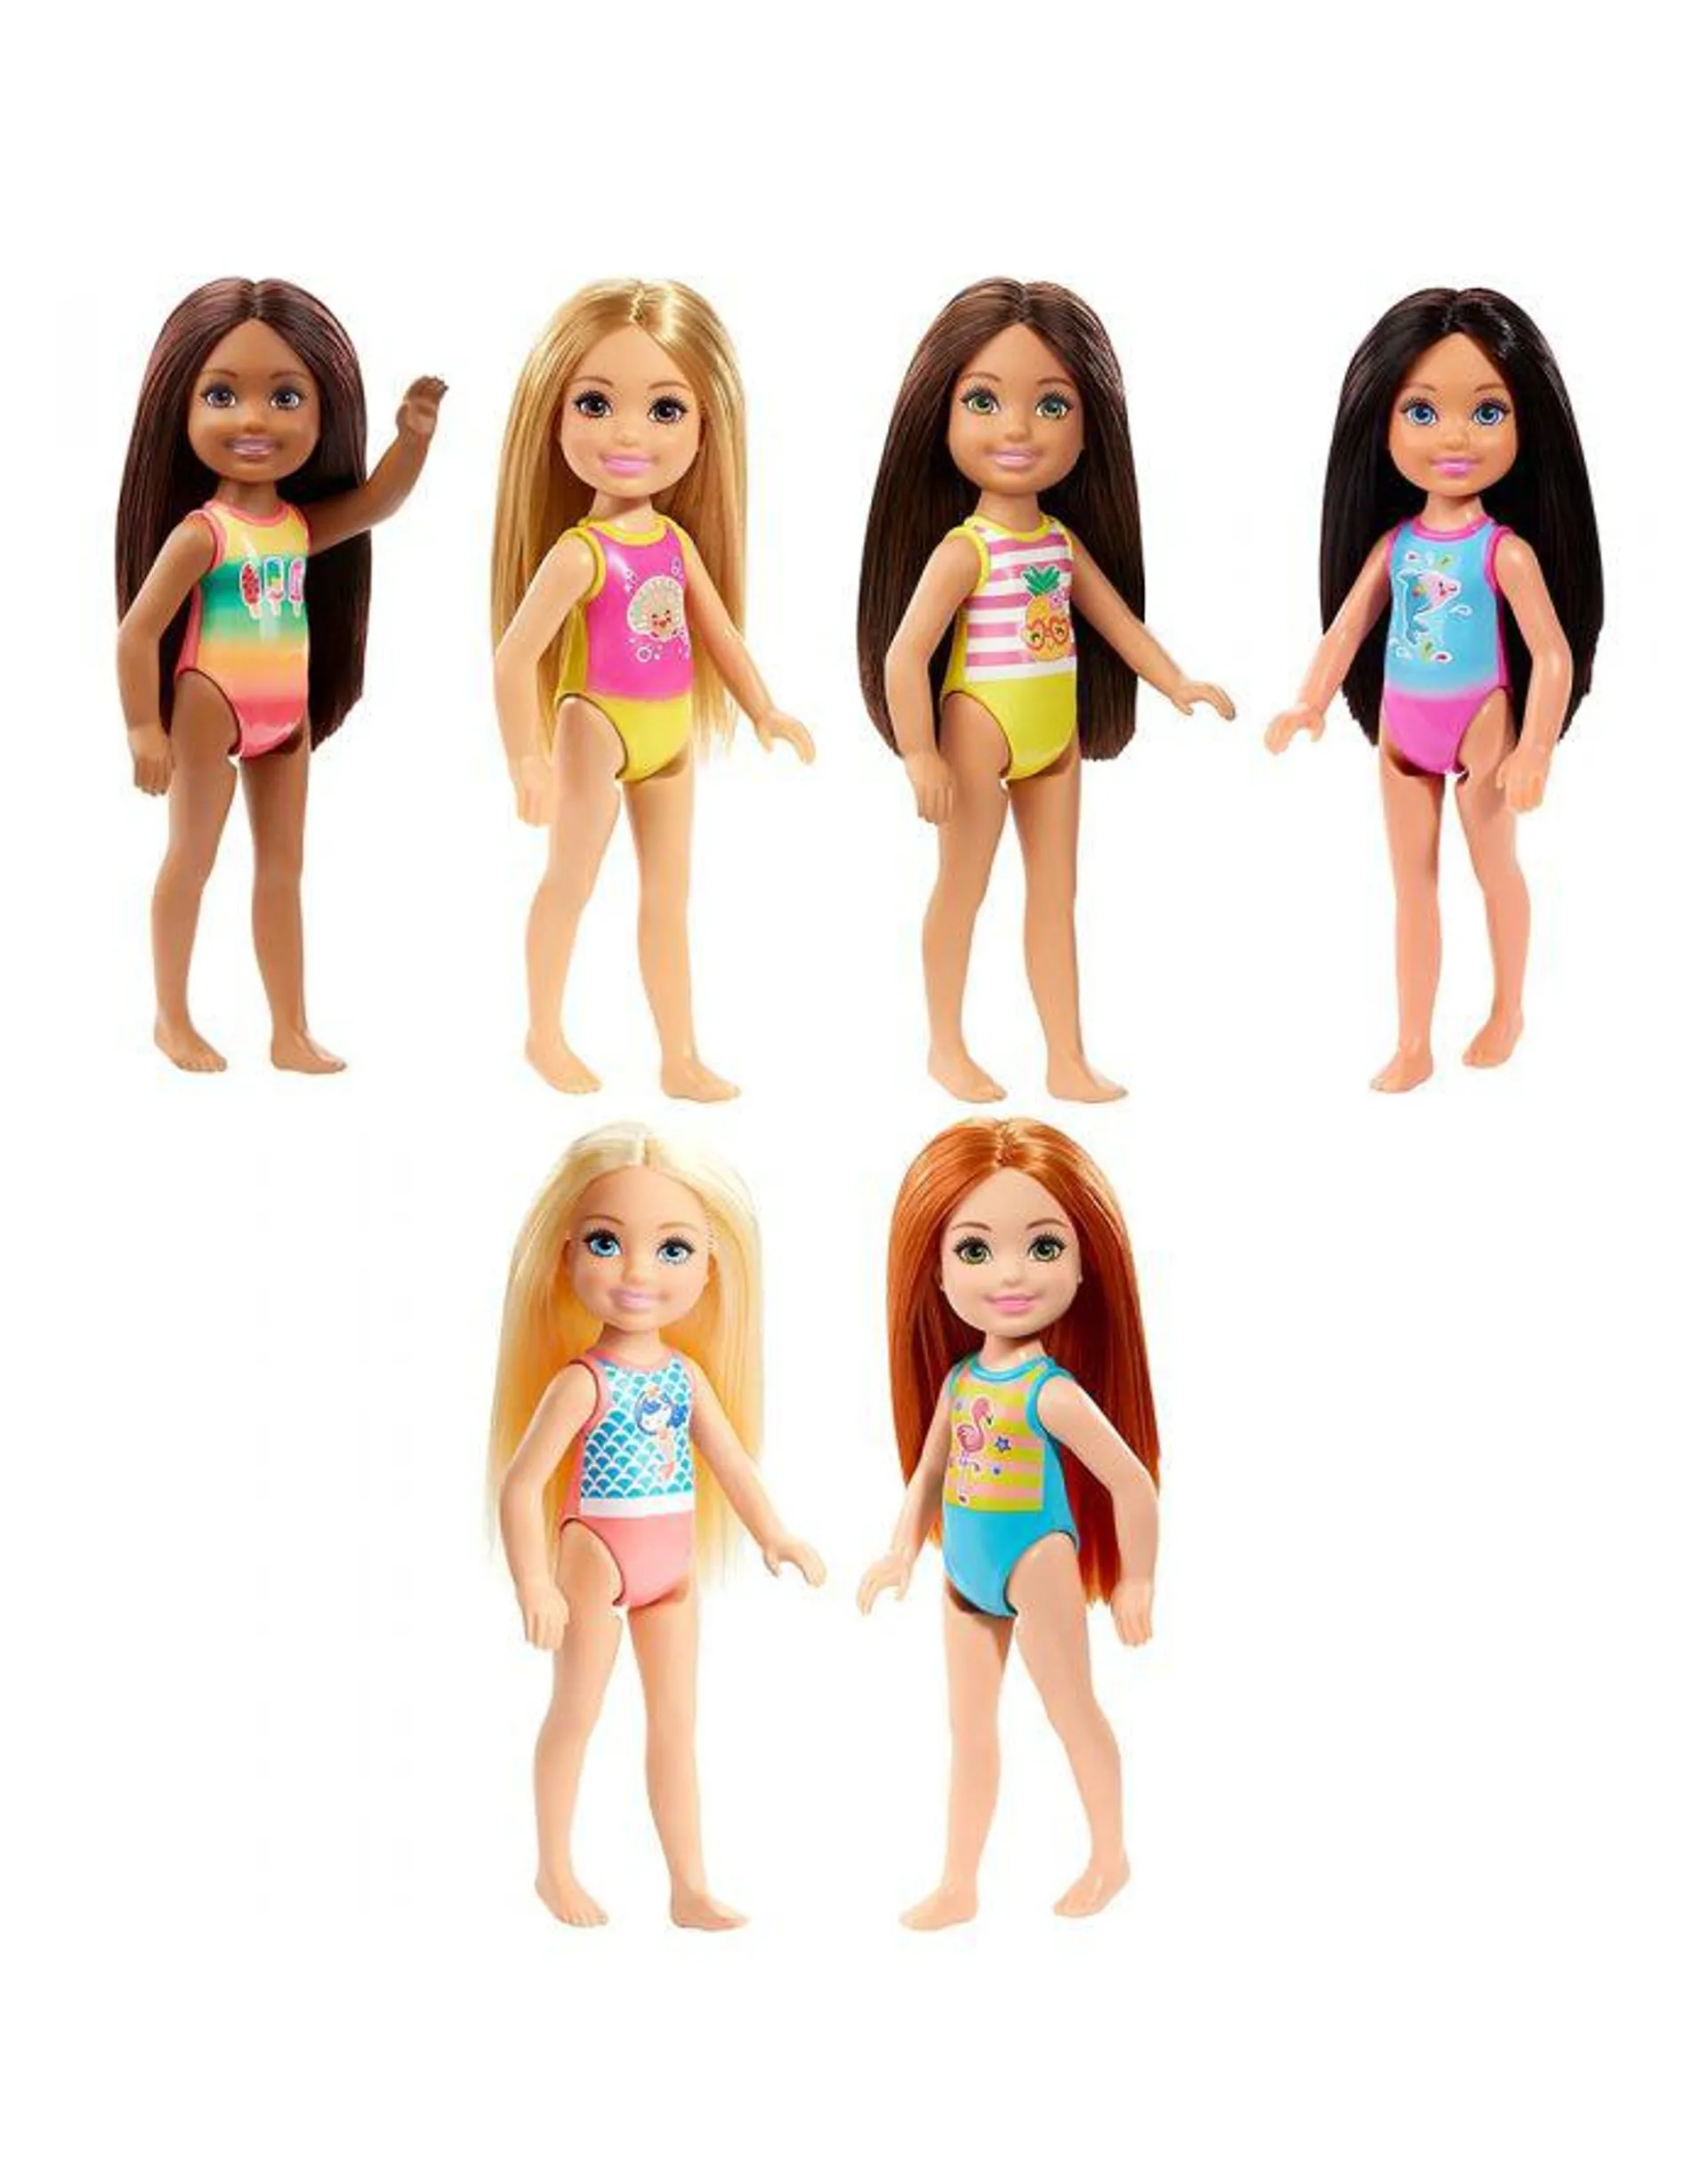 Barbie Chelsea va in Spiaggia